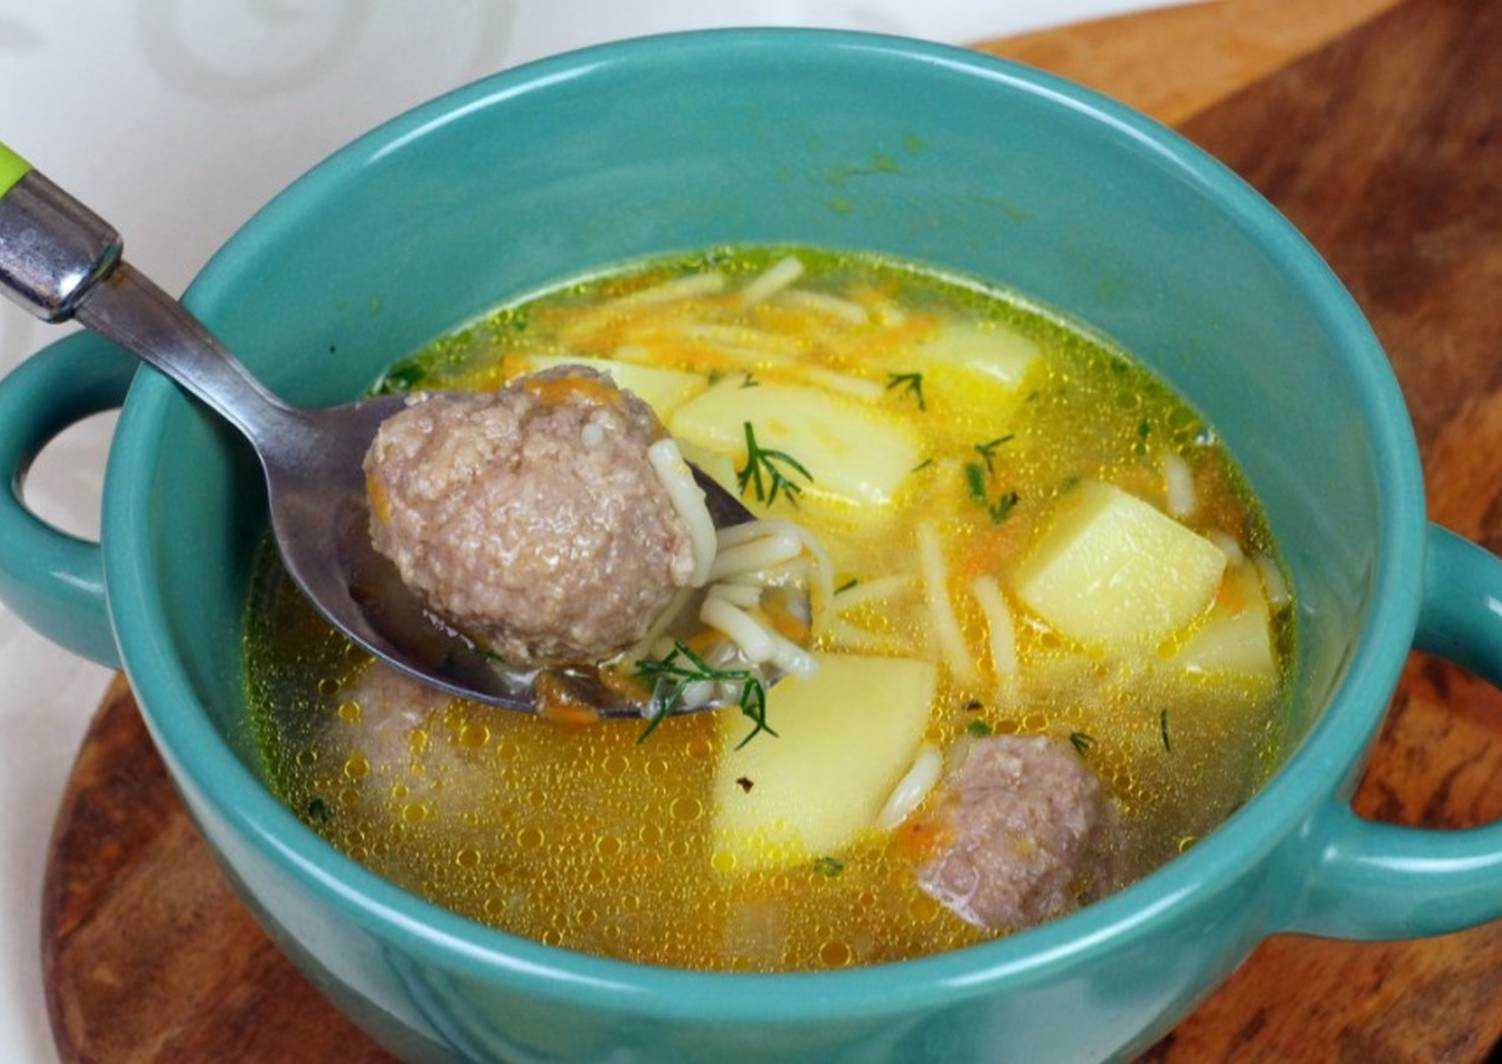 Фрикадельки для супа пошаговый рецепт с фото быстро и просто от ирины наумовой и алены каменевой